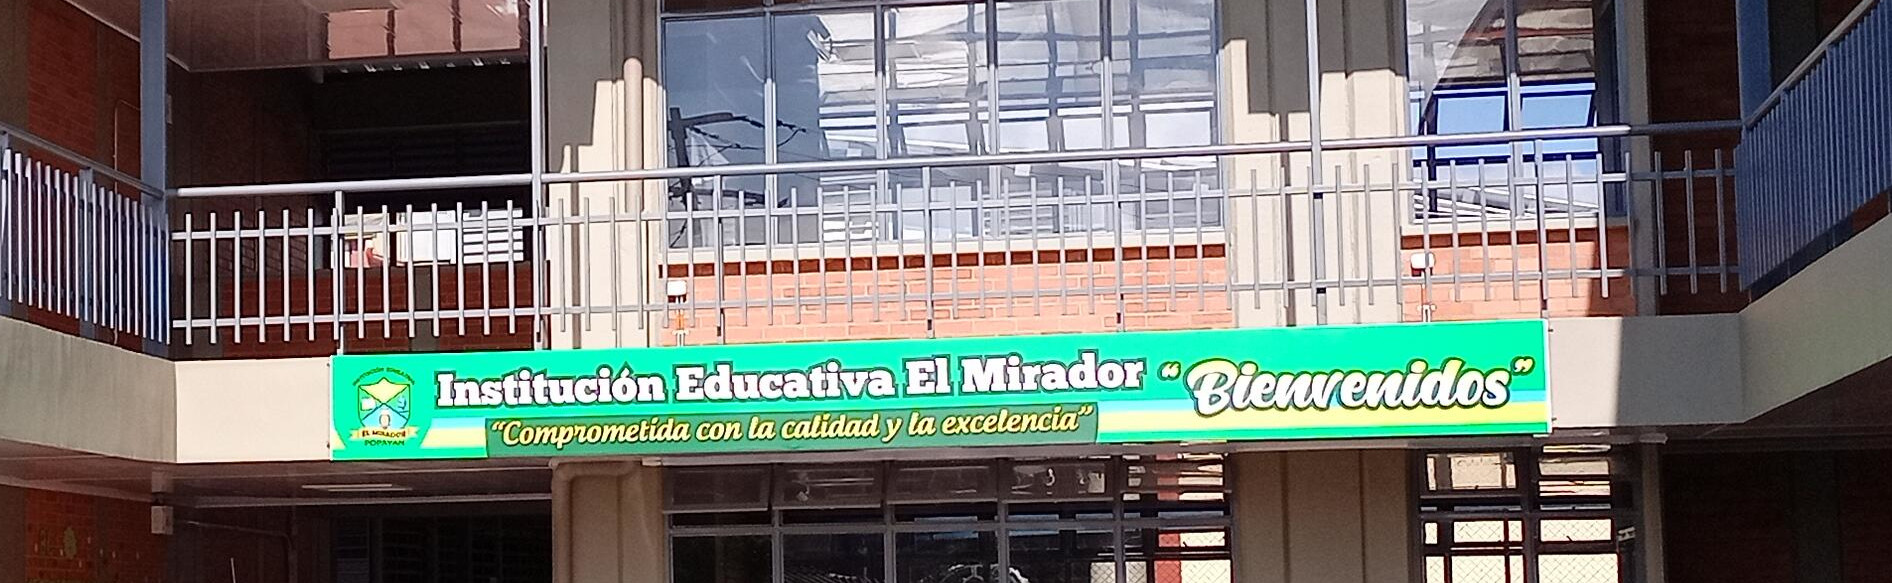 Institución Educativa El Mirador